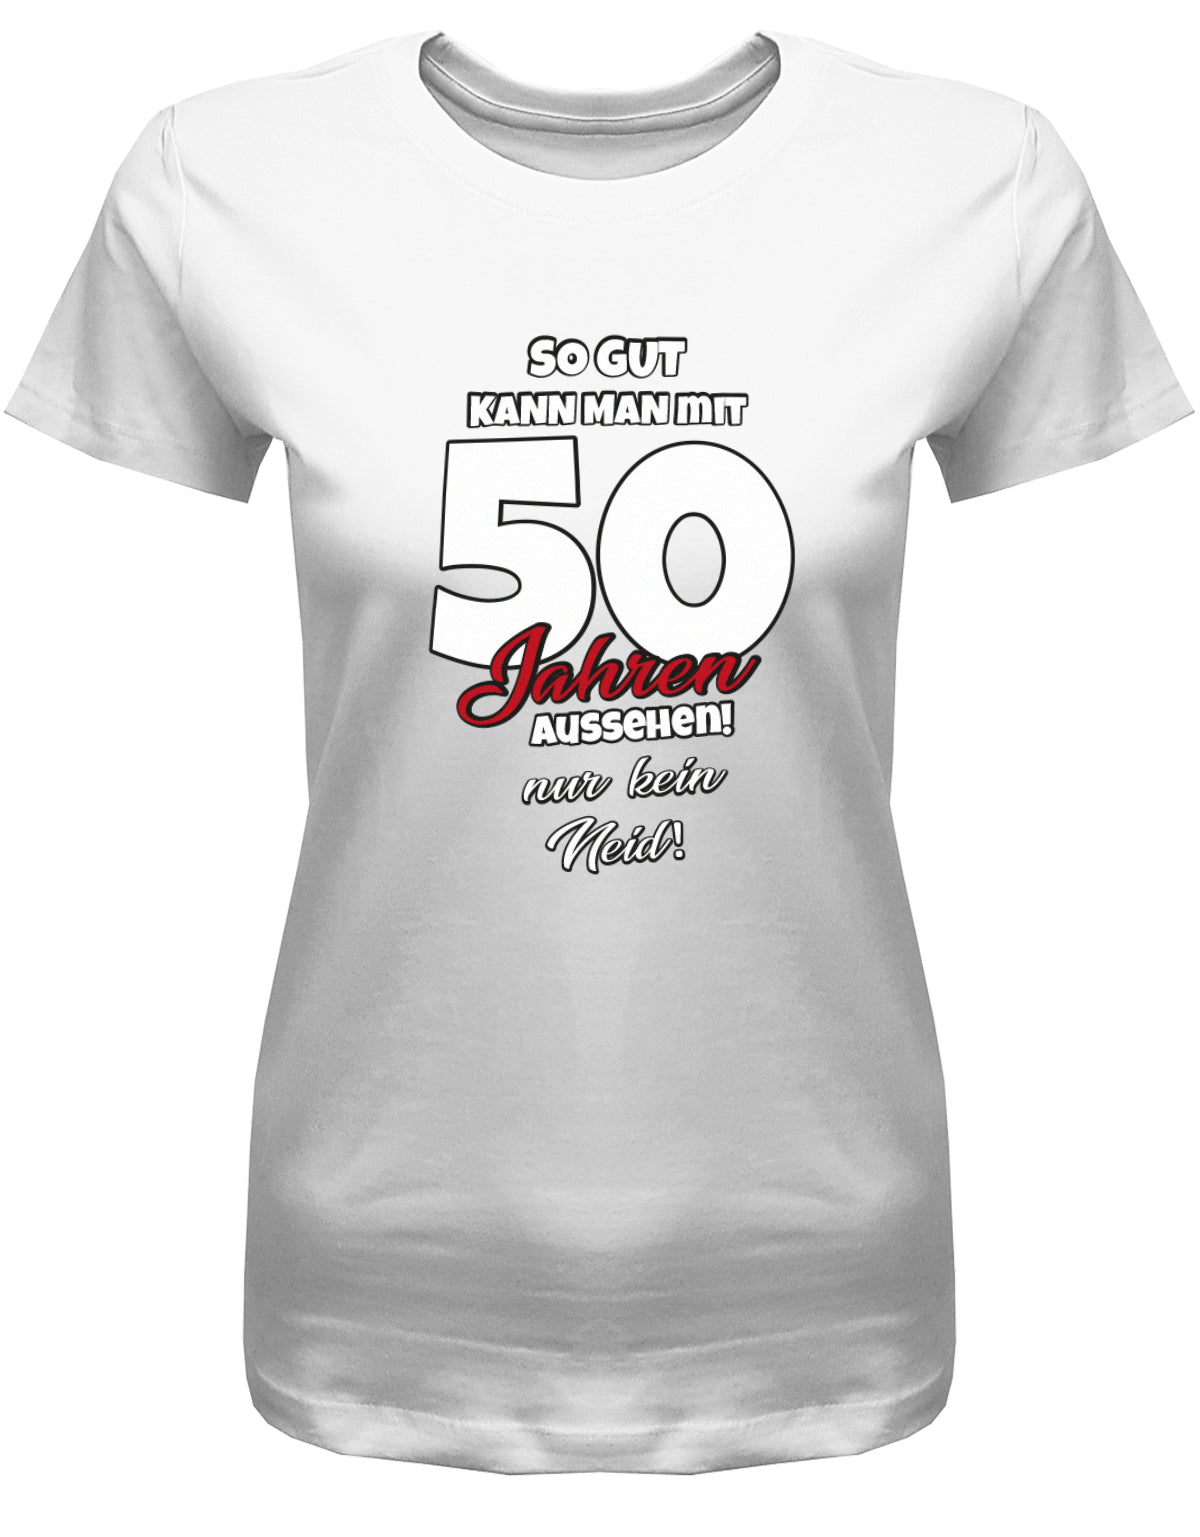 Lustiges T-Shirt zum 50 Geburtstag für die Frau Bedruckt mit So gut kann man mit 50 Jahren aussehen! Nur kein Neid! Weiss